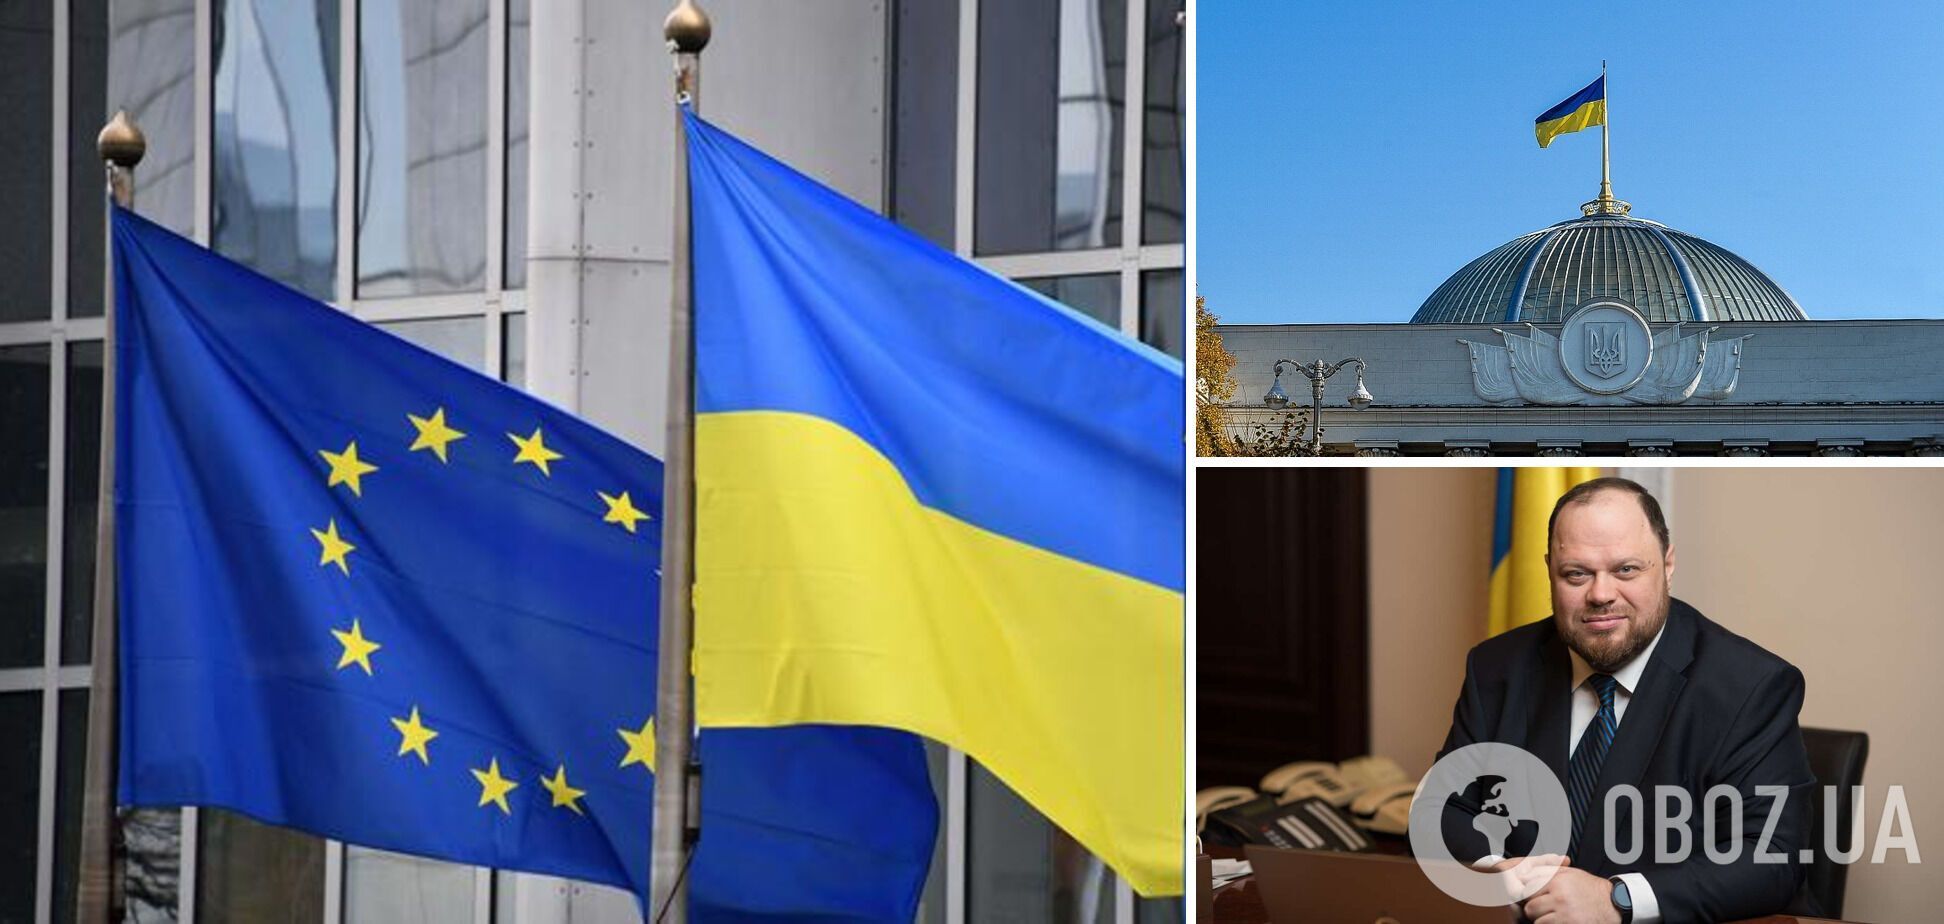 Верховна Рада України найближчим часом має ухвалити низку євроінтеграційних законопроєктів